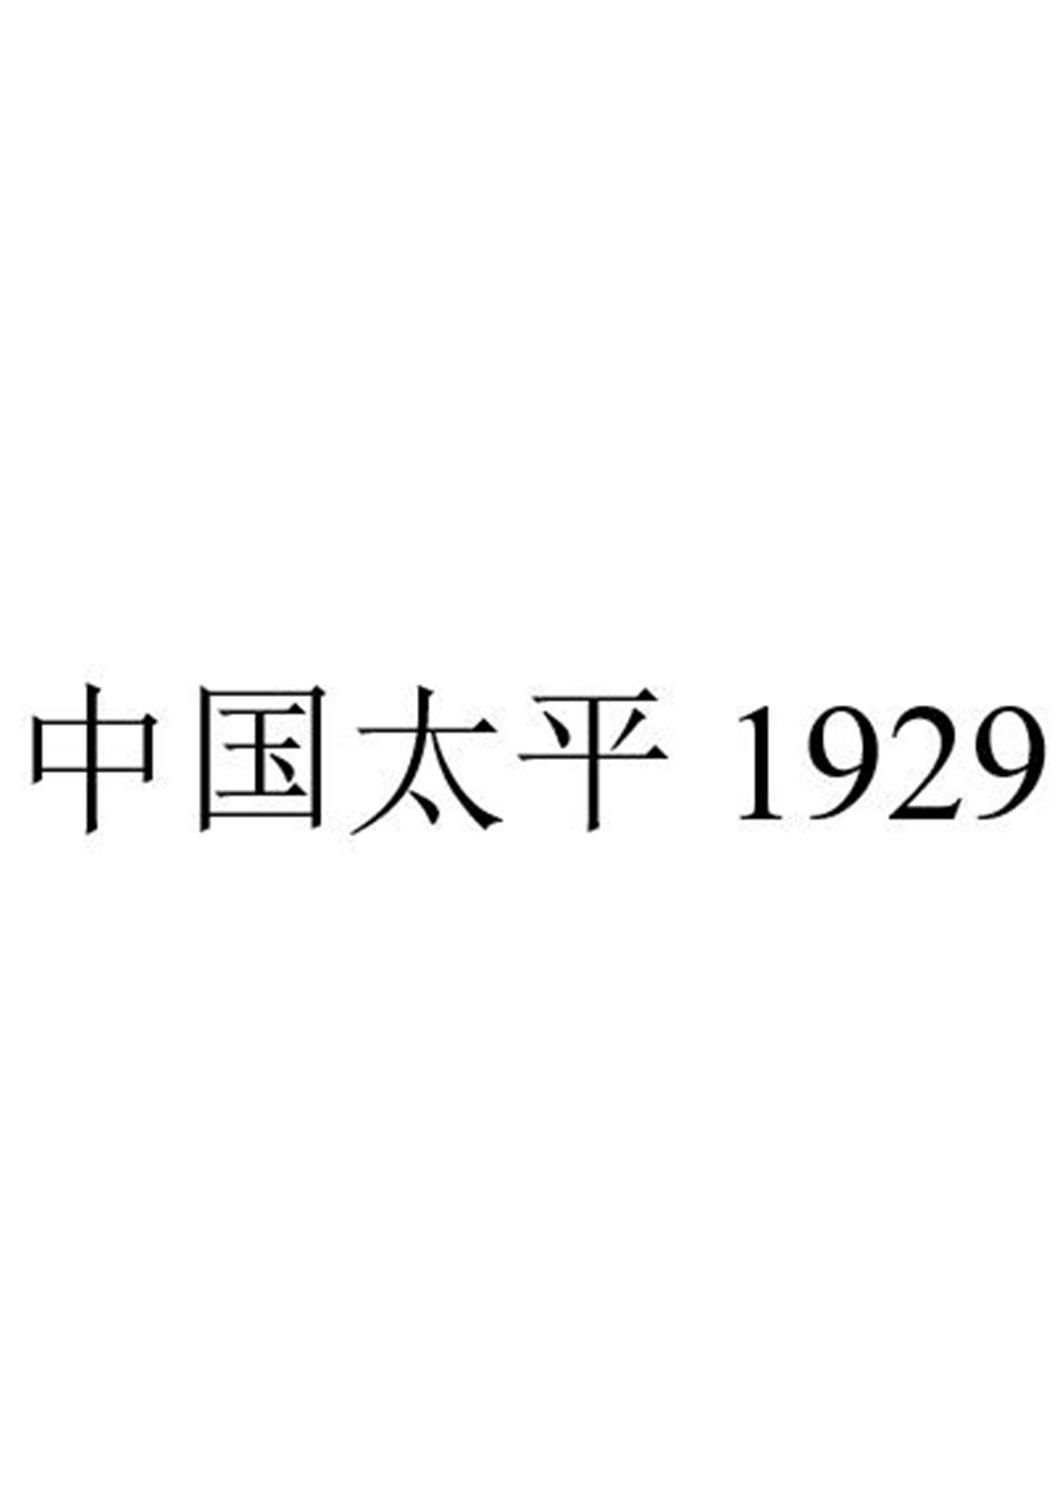 中国 em>太平/em 1929